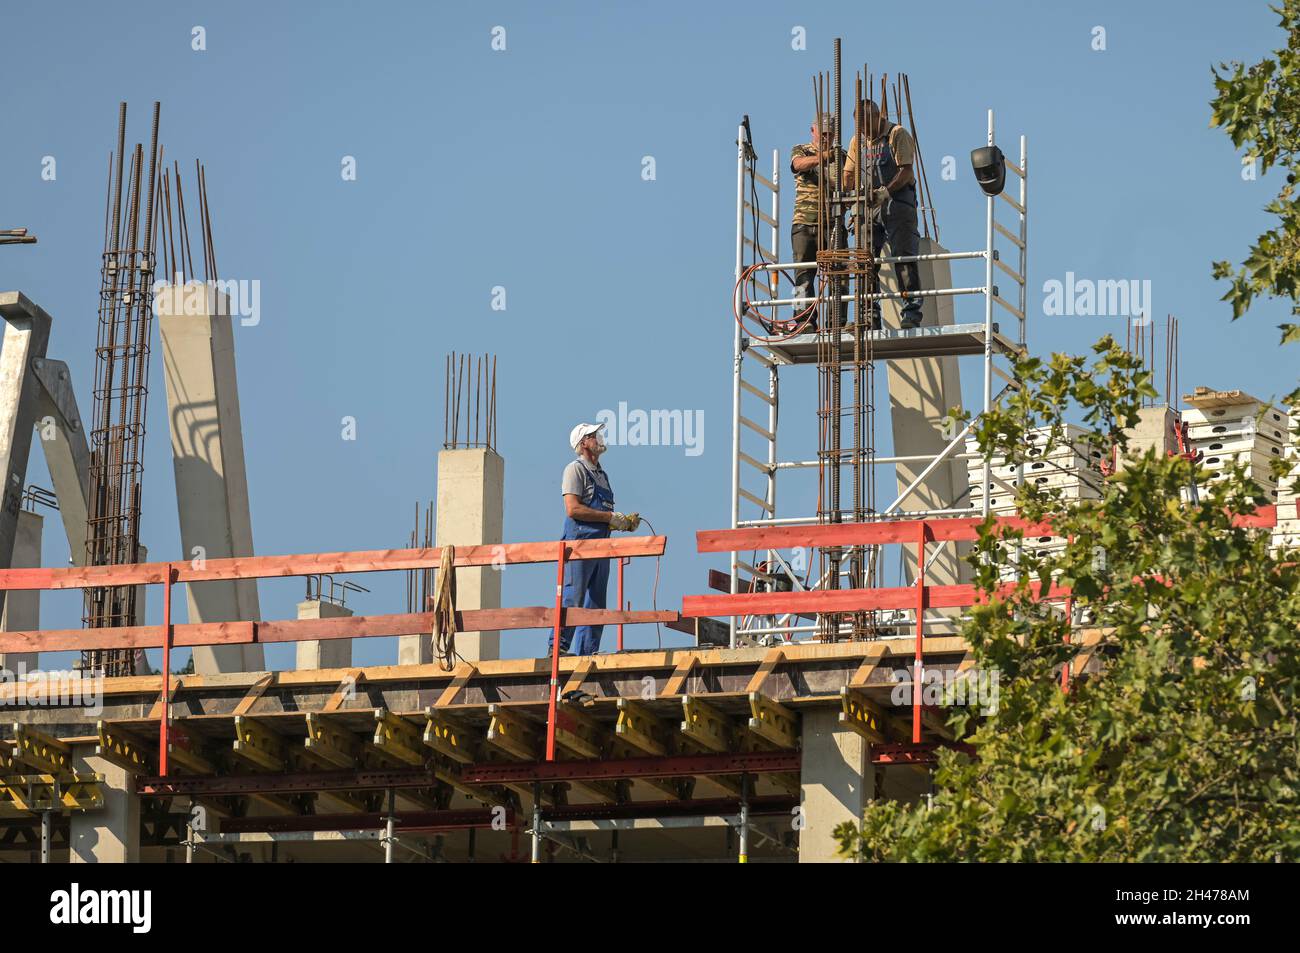 Baustelle, Bauarbeiter, Gerüst, Sicherheit, Bundesallee, Wilmersdorf, Berlin, Deutschland Stock Photo